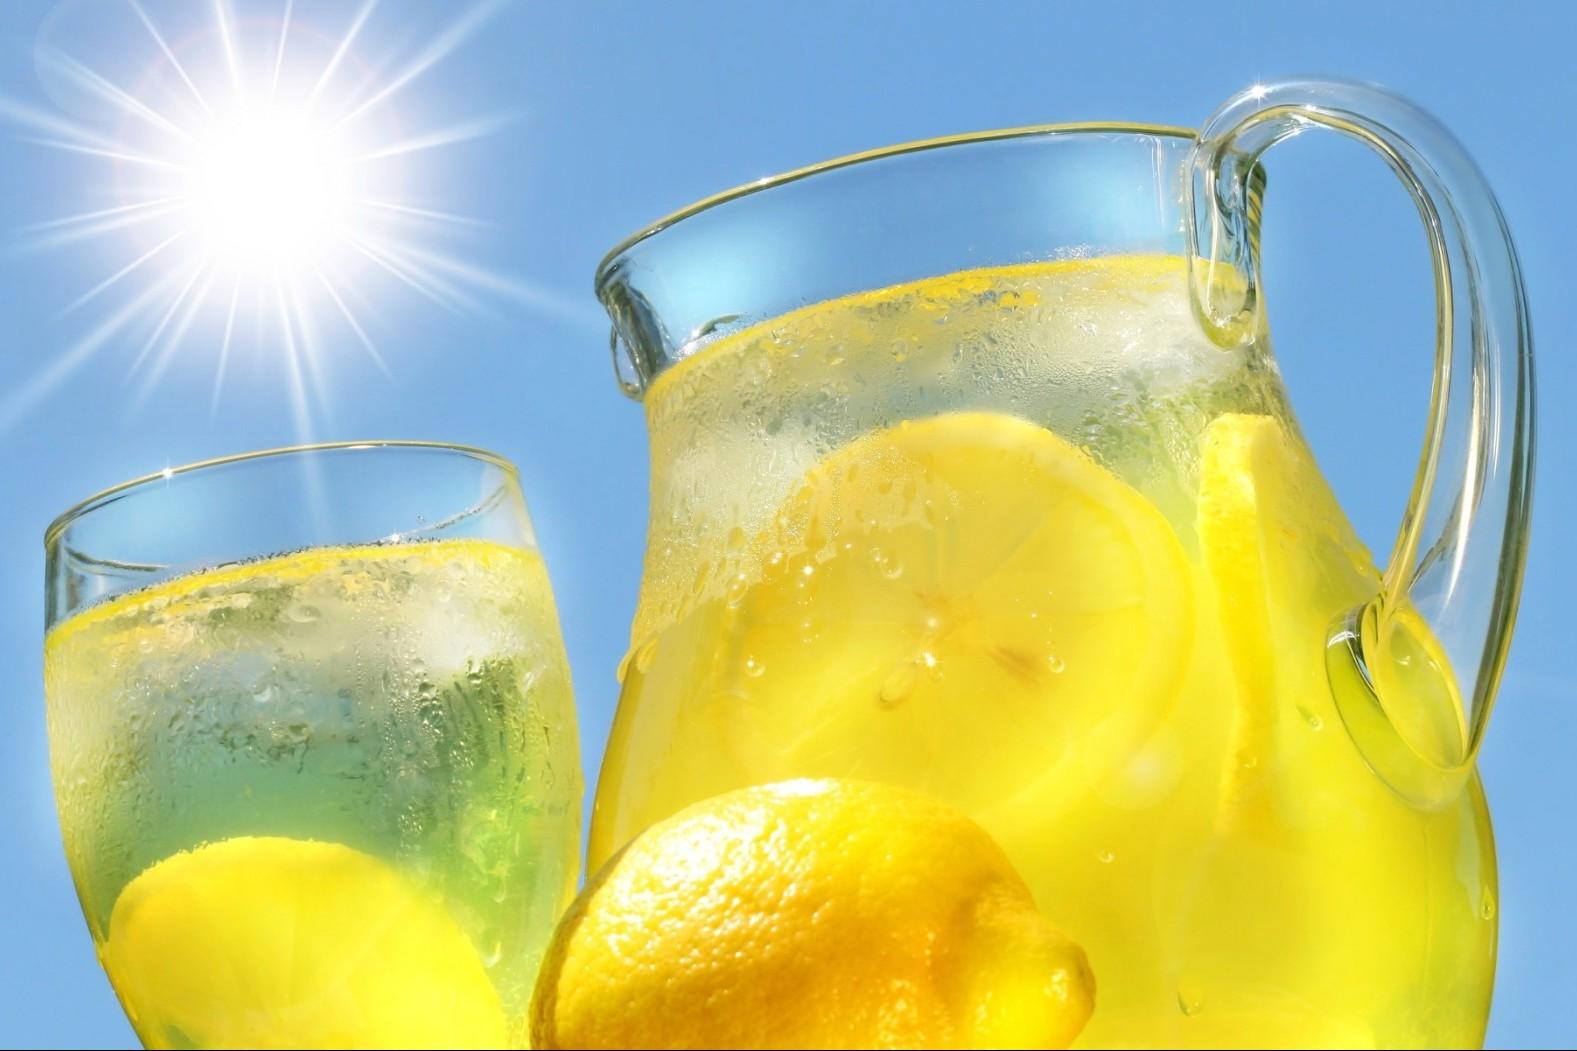 Una semplicissima bevanda al limone per far sparire la pancia - Ricette 